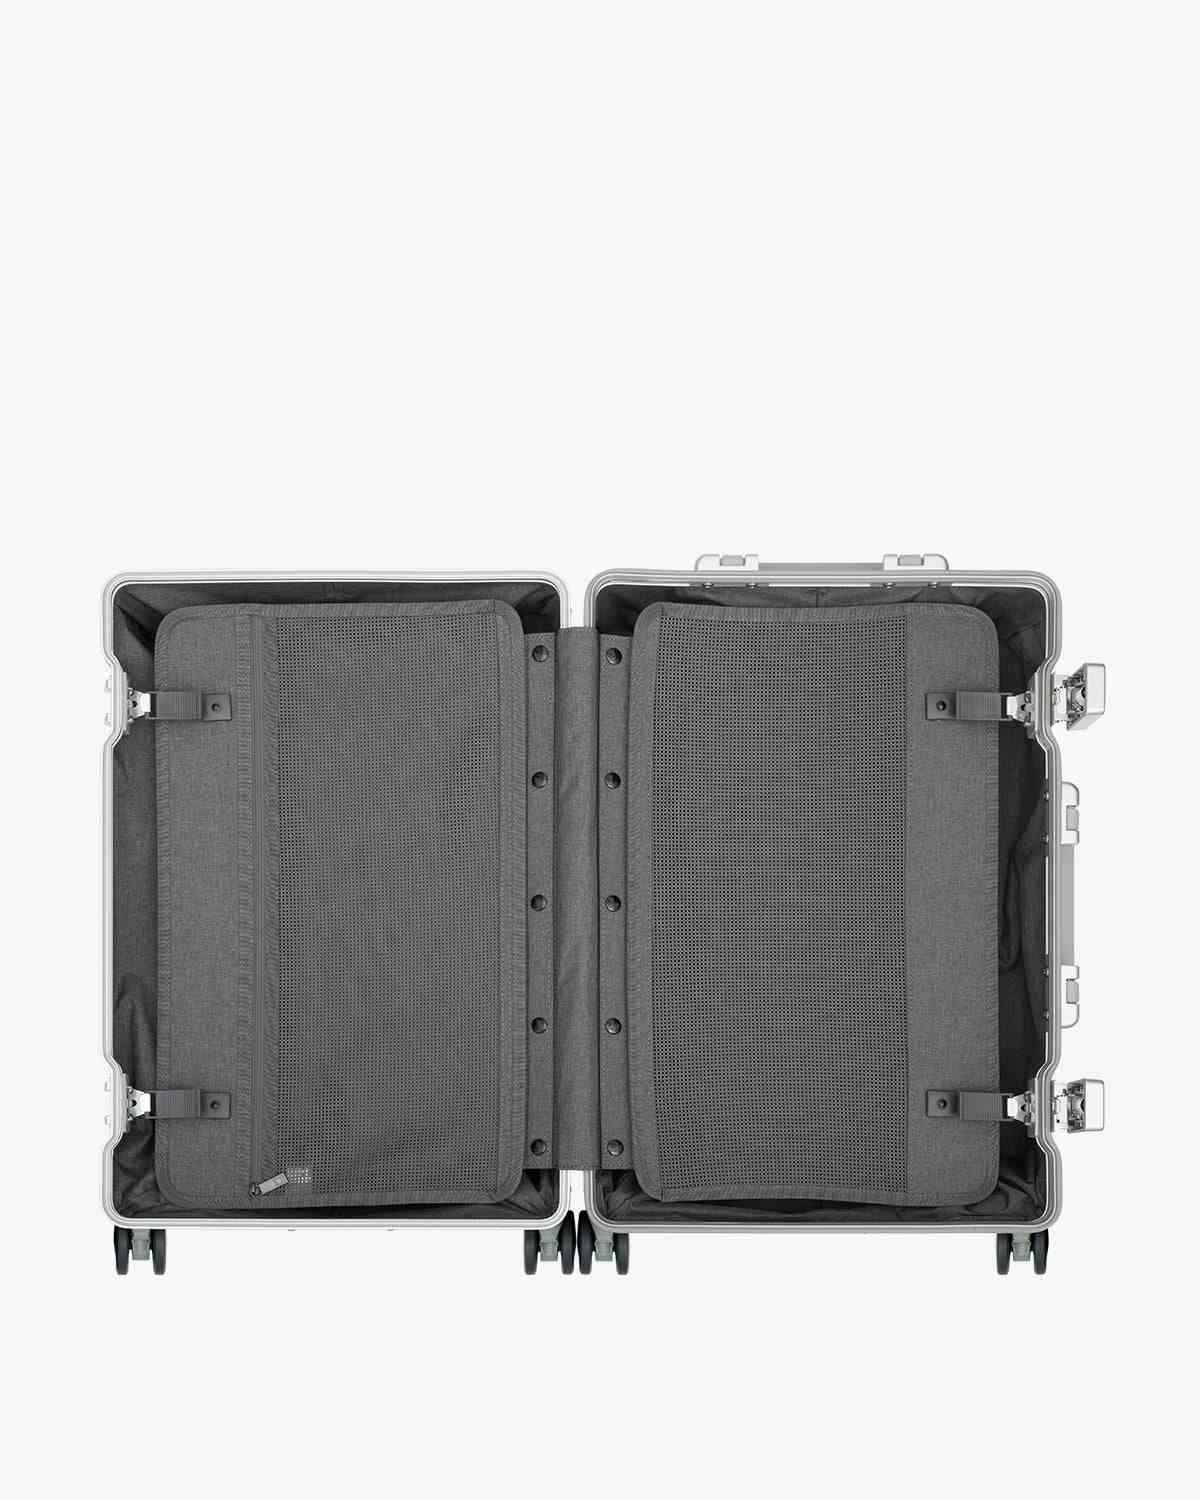 LEVEL8 Gibraltar Carry on Luggage, 20 Aluminum Luggage Hardside Suitcase  Zipperless Luggage with TSA Lock, 8 Spinner Wheels - Dark Grey